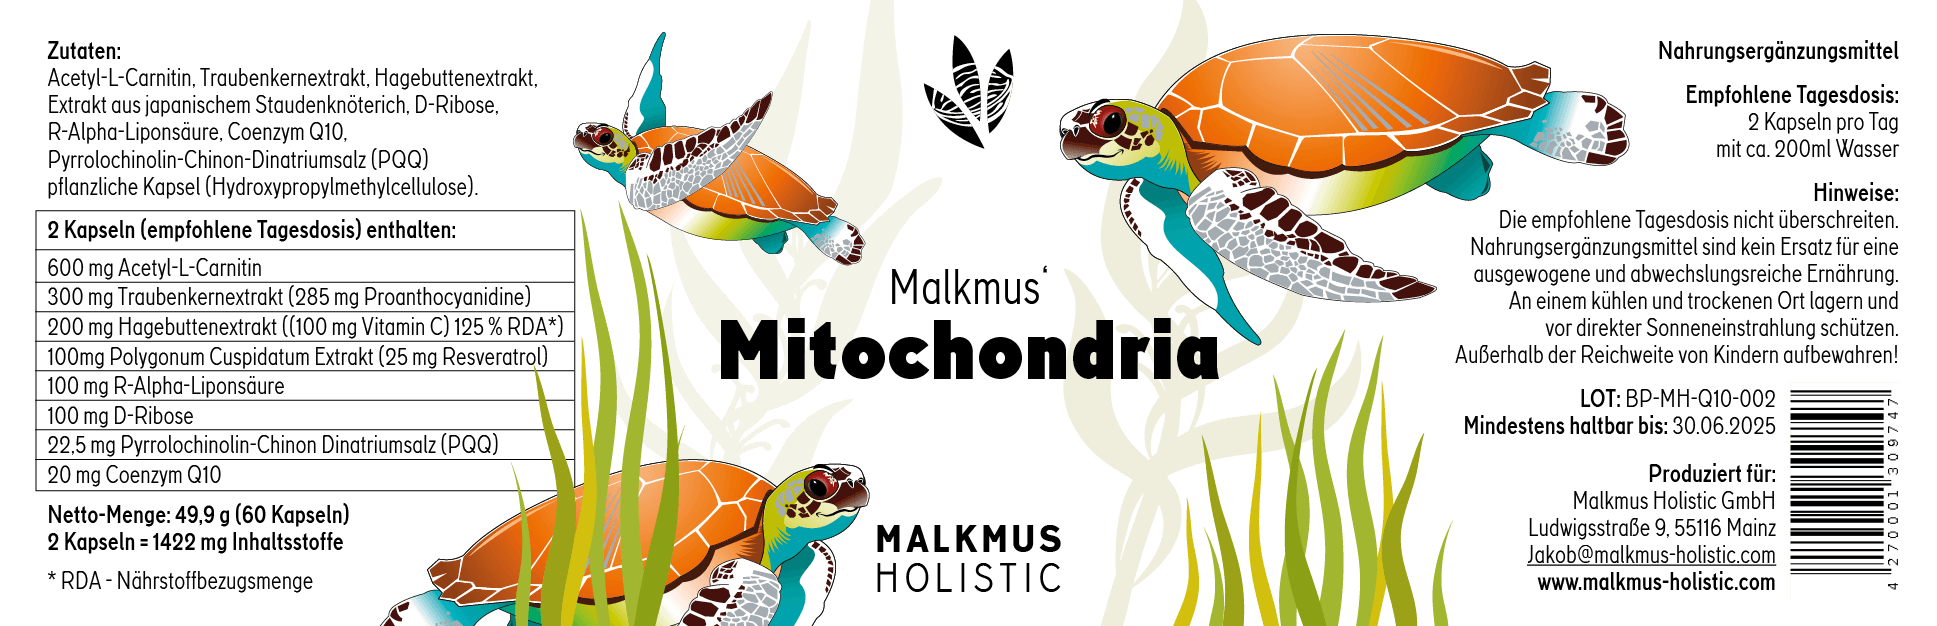 Mitochondrie : production maximale d'énergie pour plus de puissance au quotidien - Malkmus Holistic